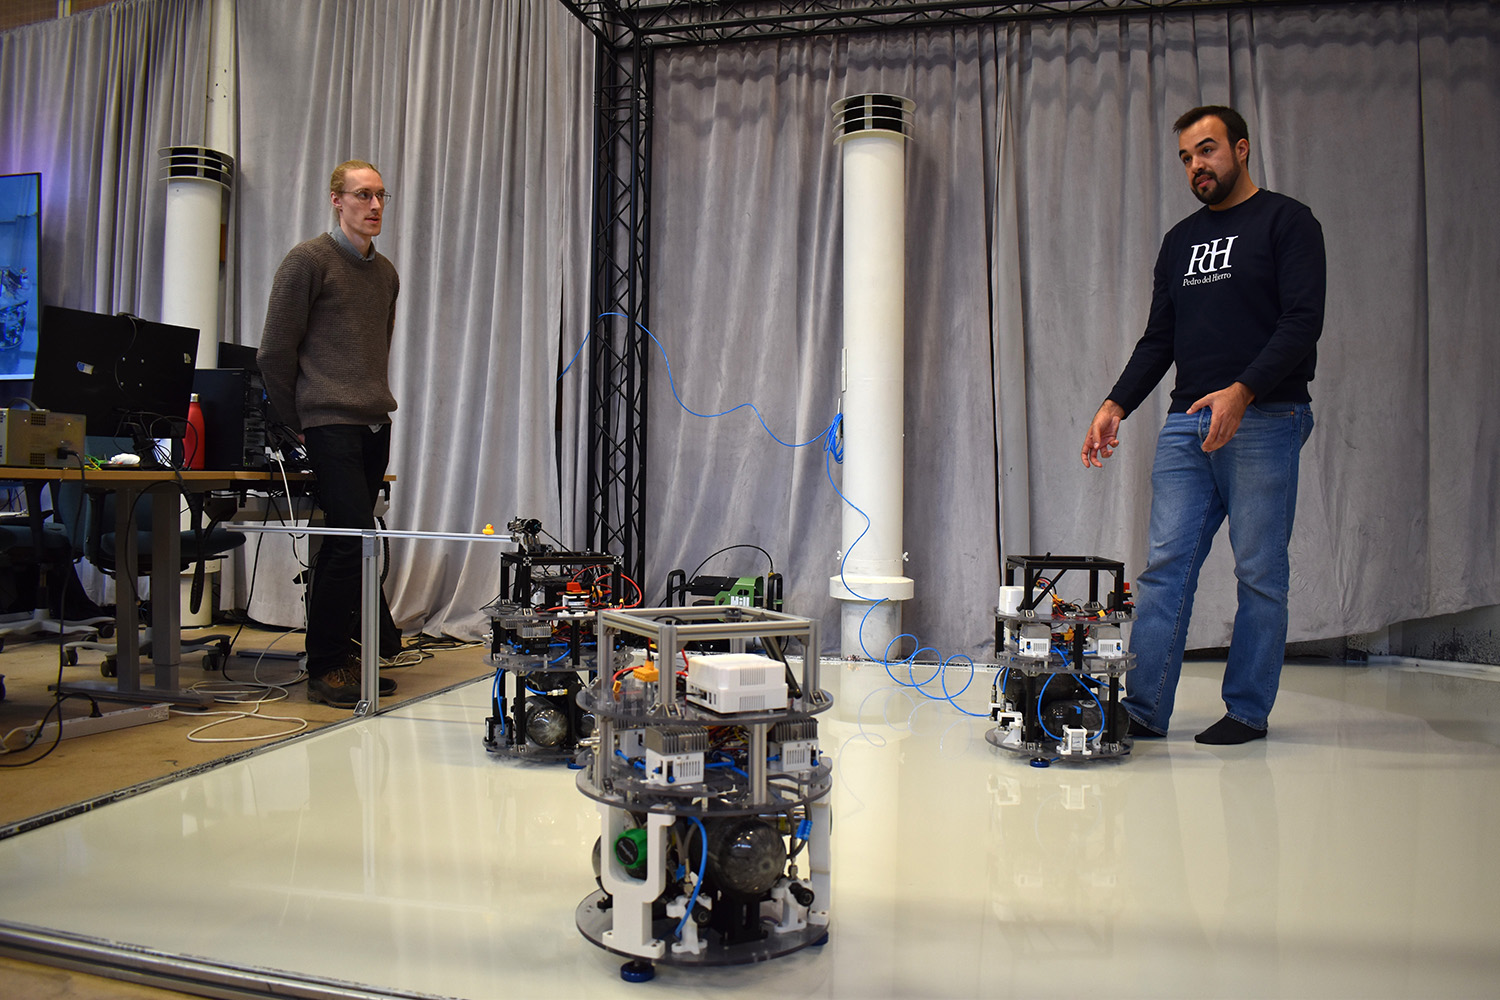 Spacebots i labbet med Elias Krantz och Pedro Roque. Foto: Nelly Sahlstrand/Linköpings universitet